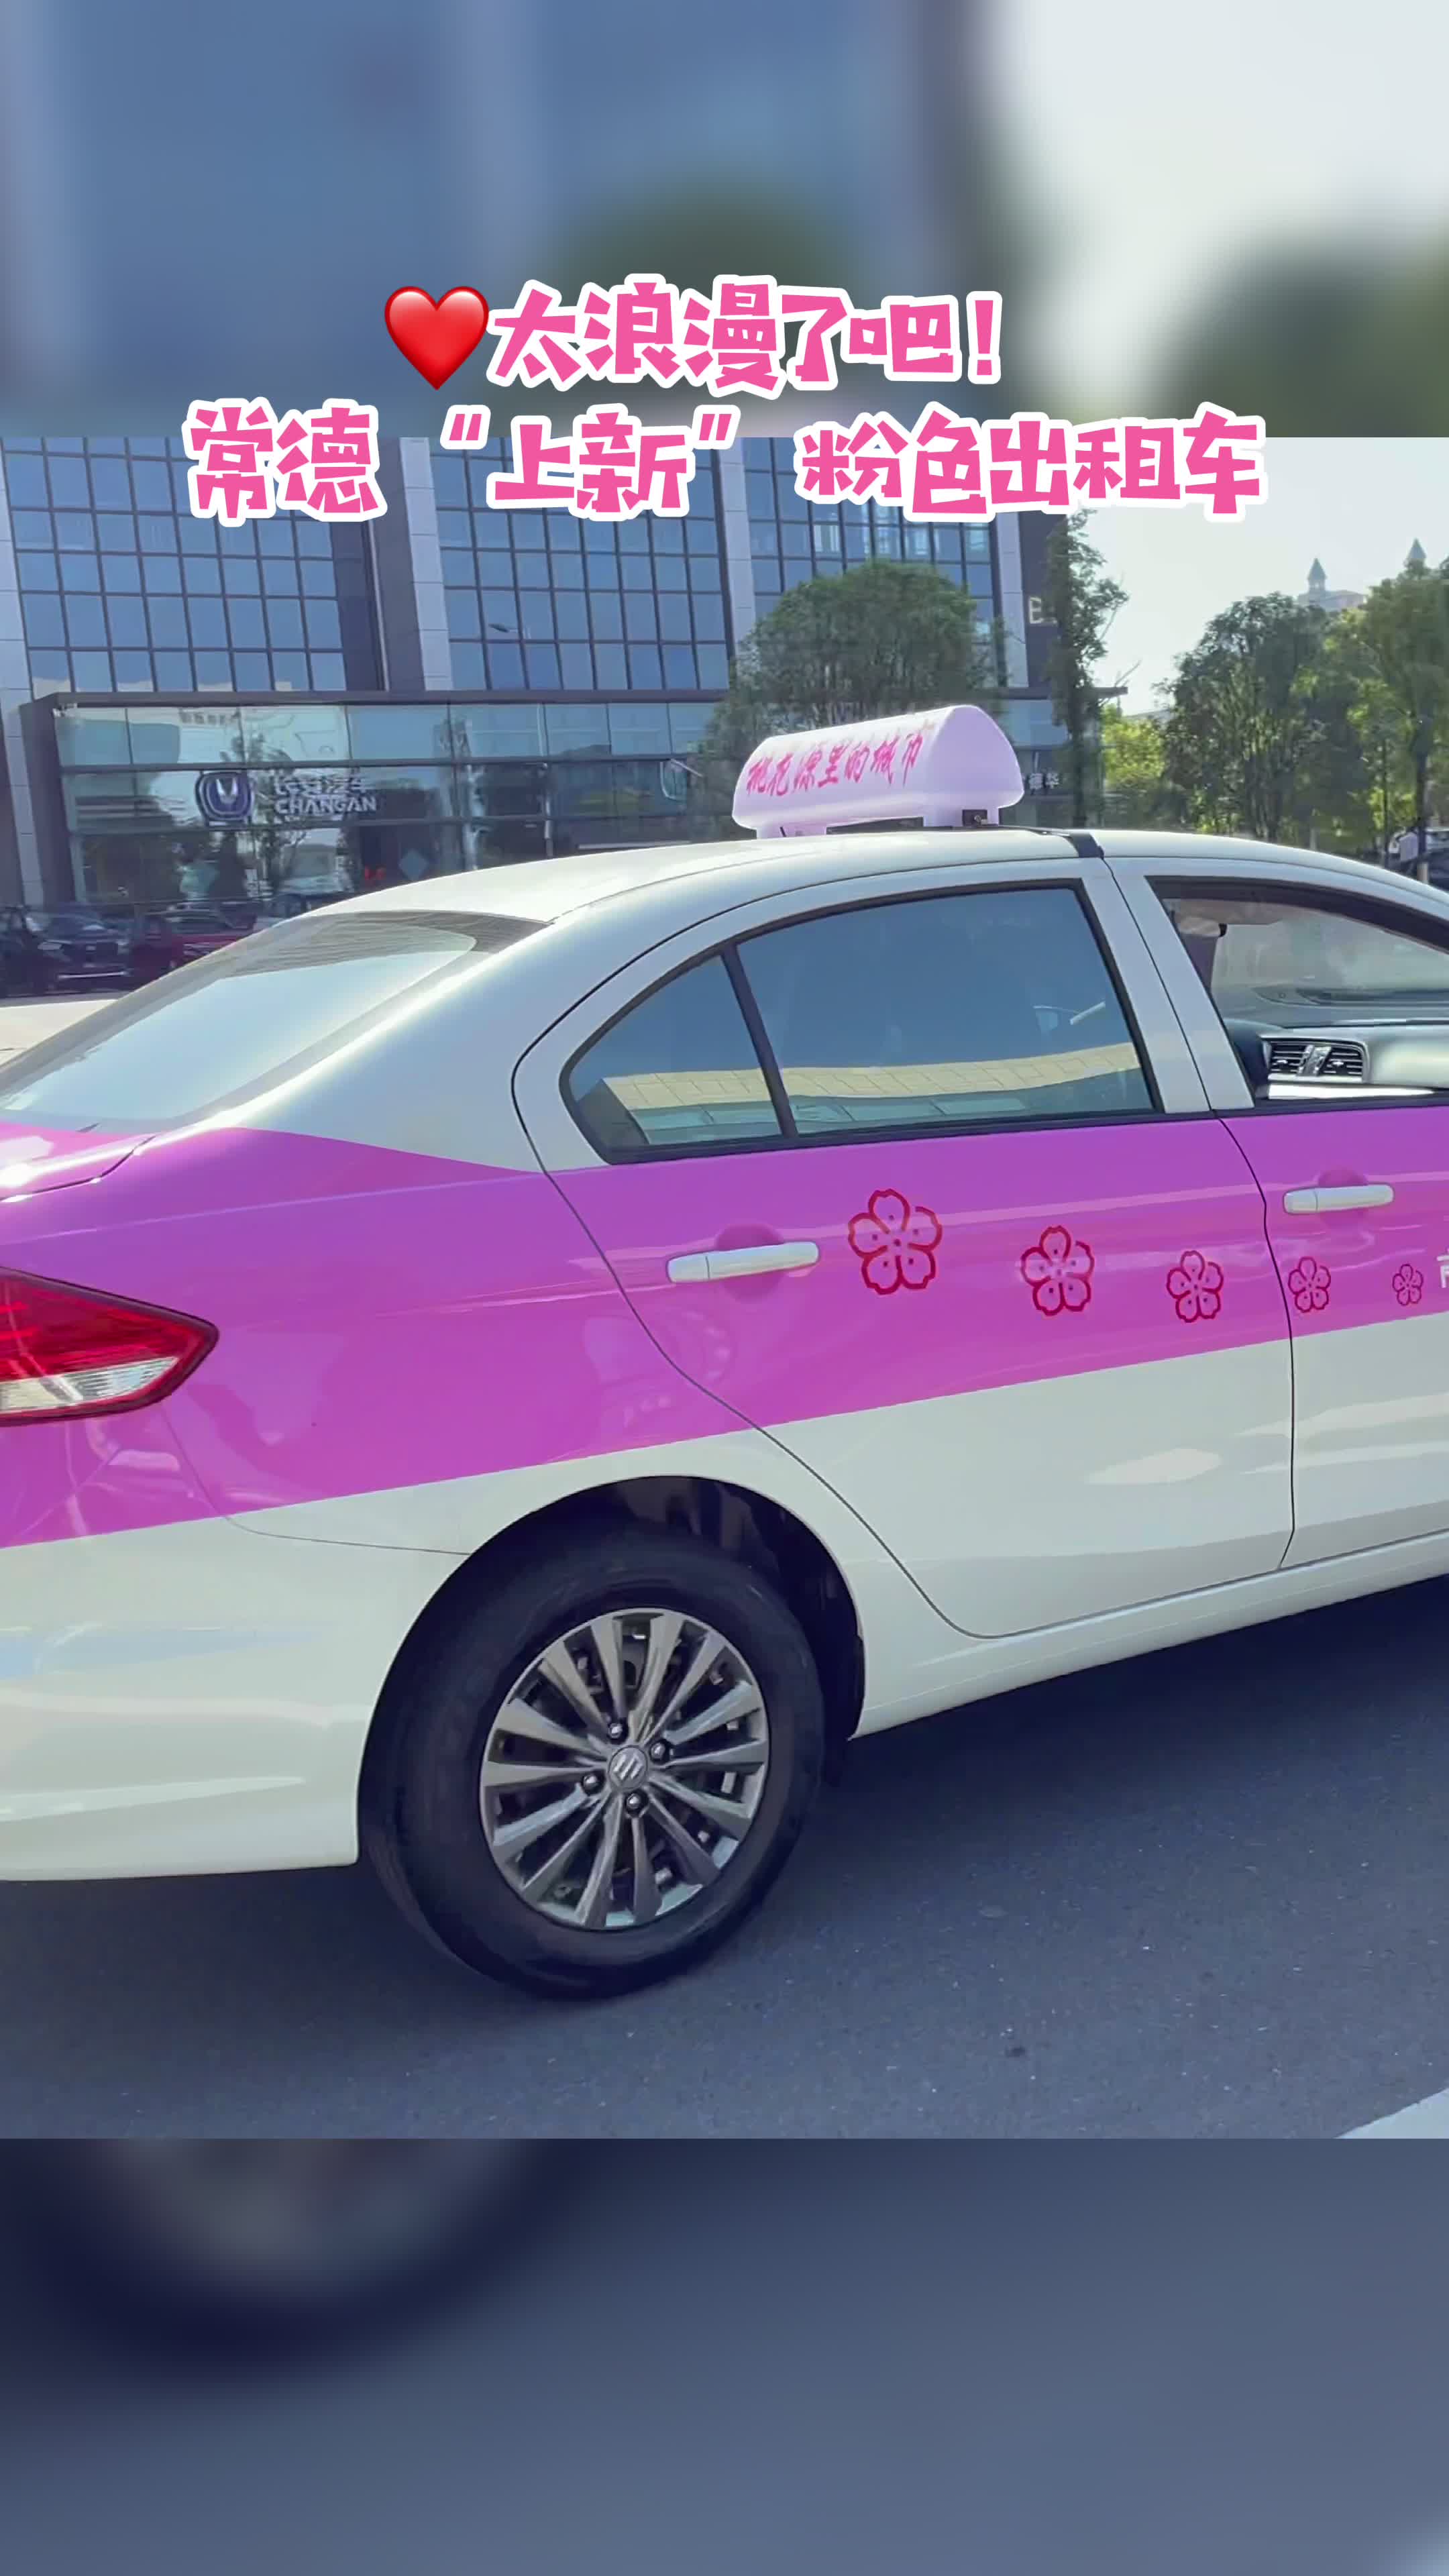 视频丨常德上新粉色出租车 网友:打个车都是爱你的颜色